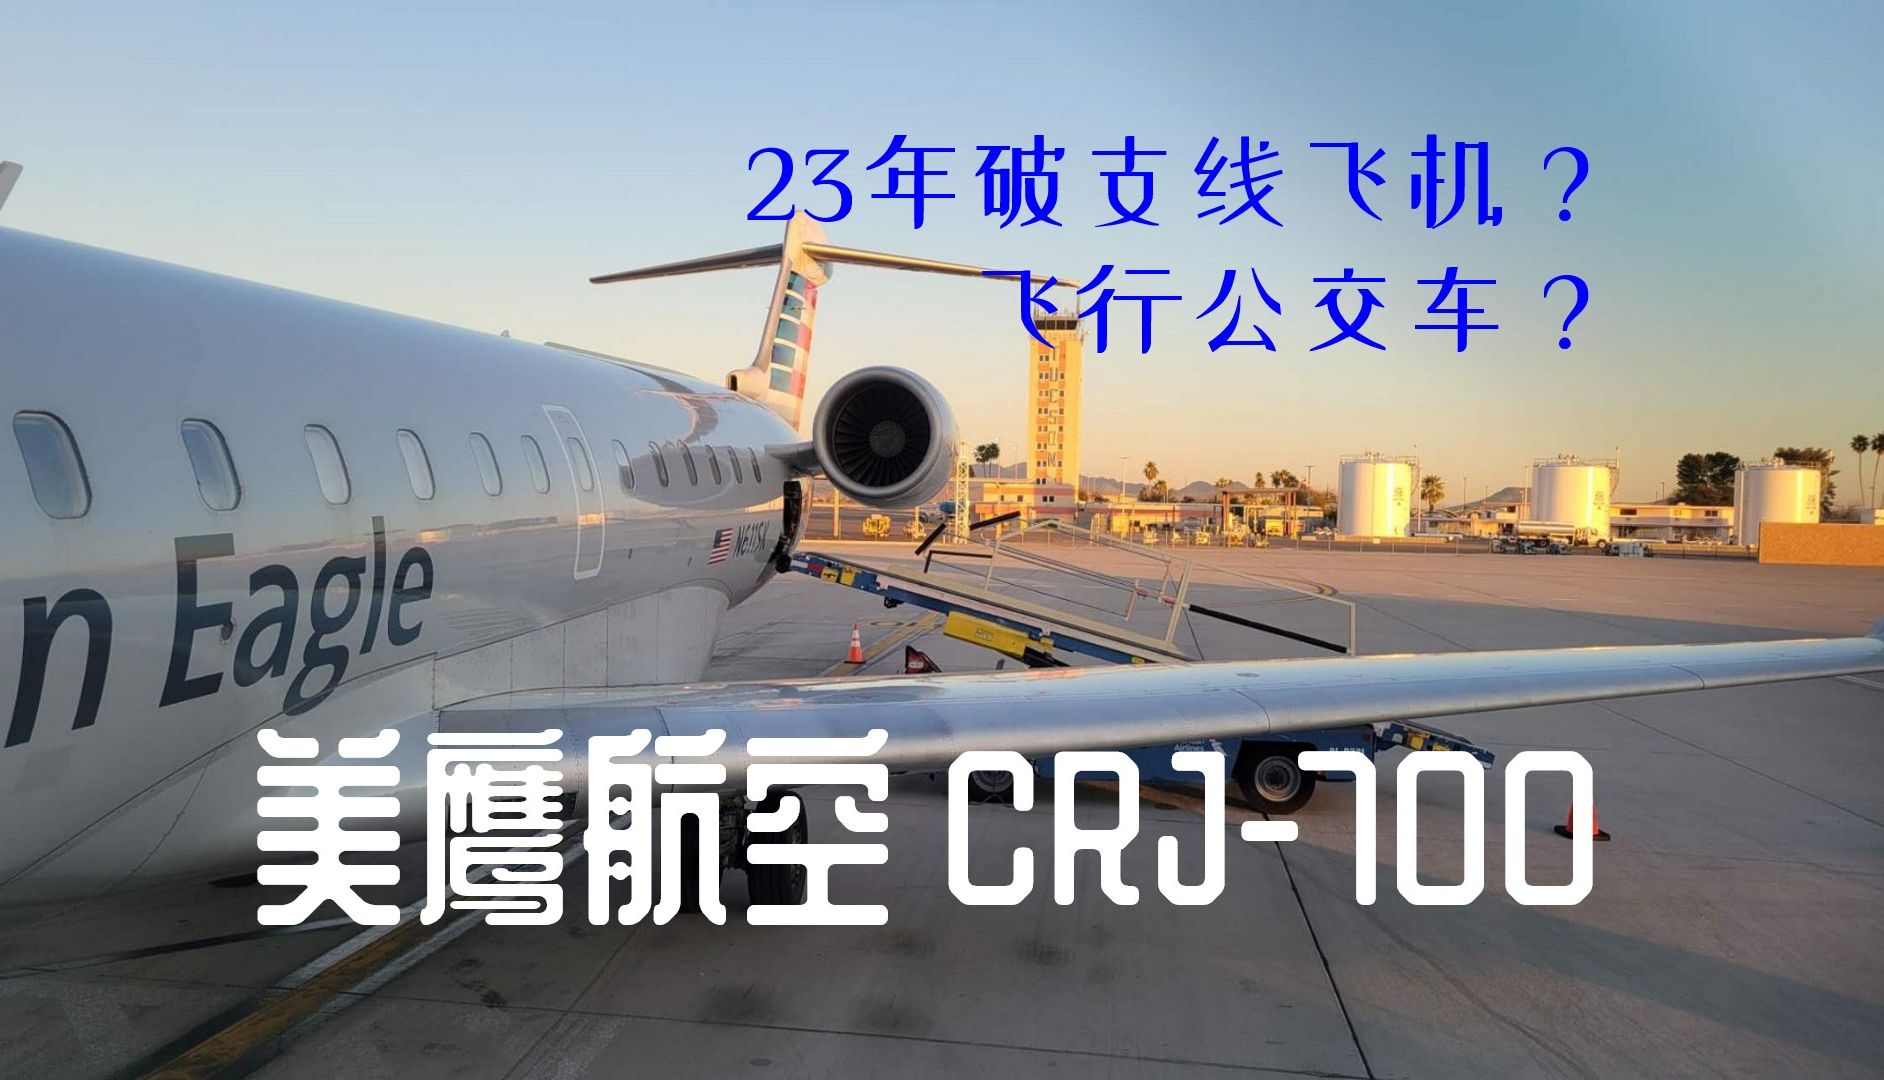 crj700 中国空军图片